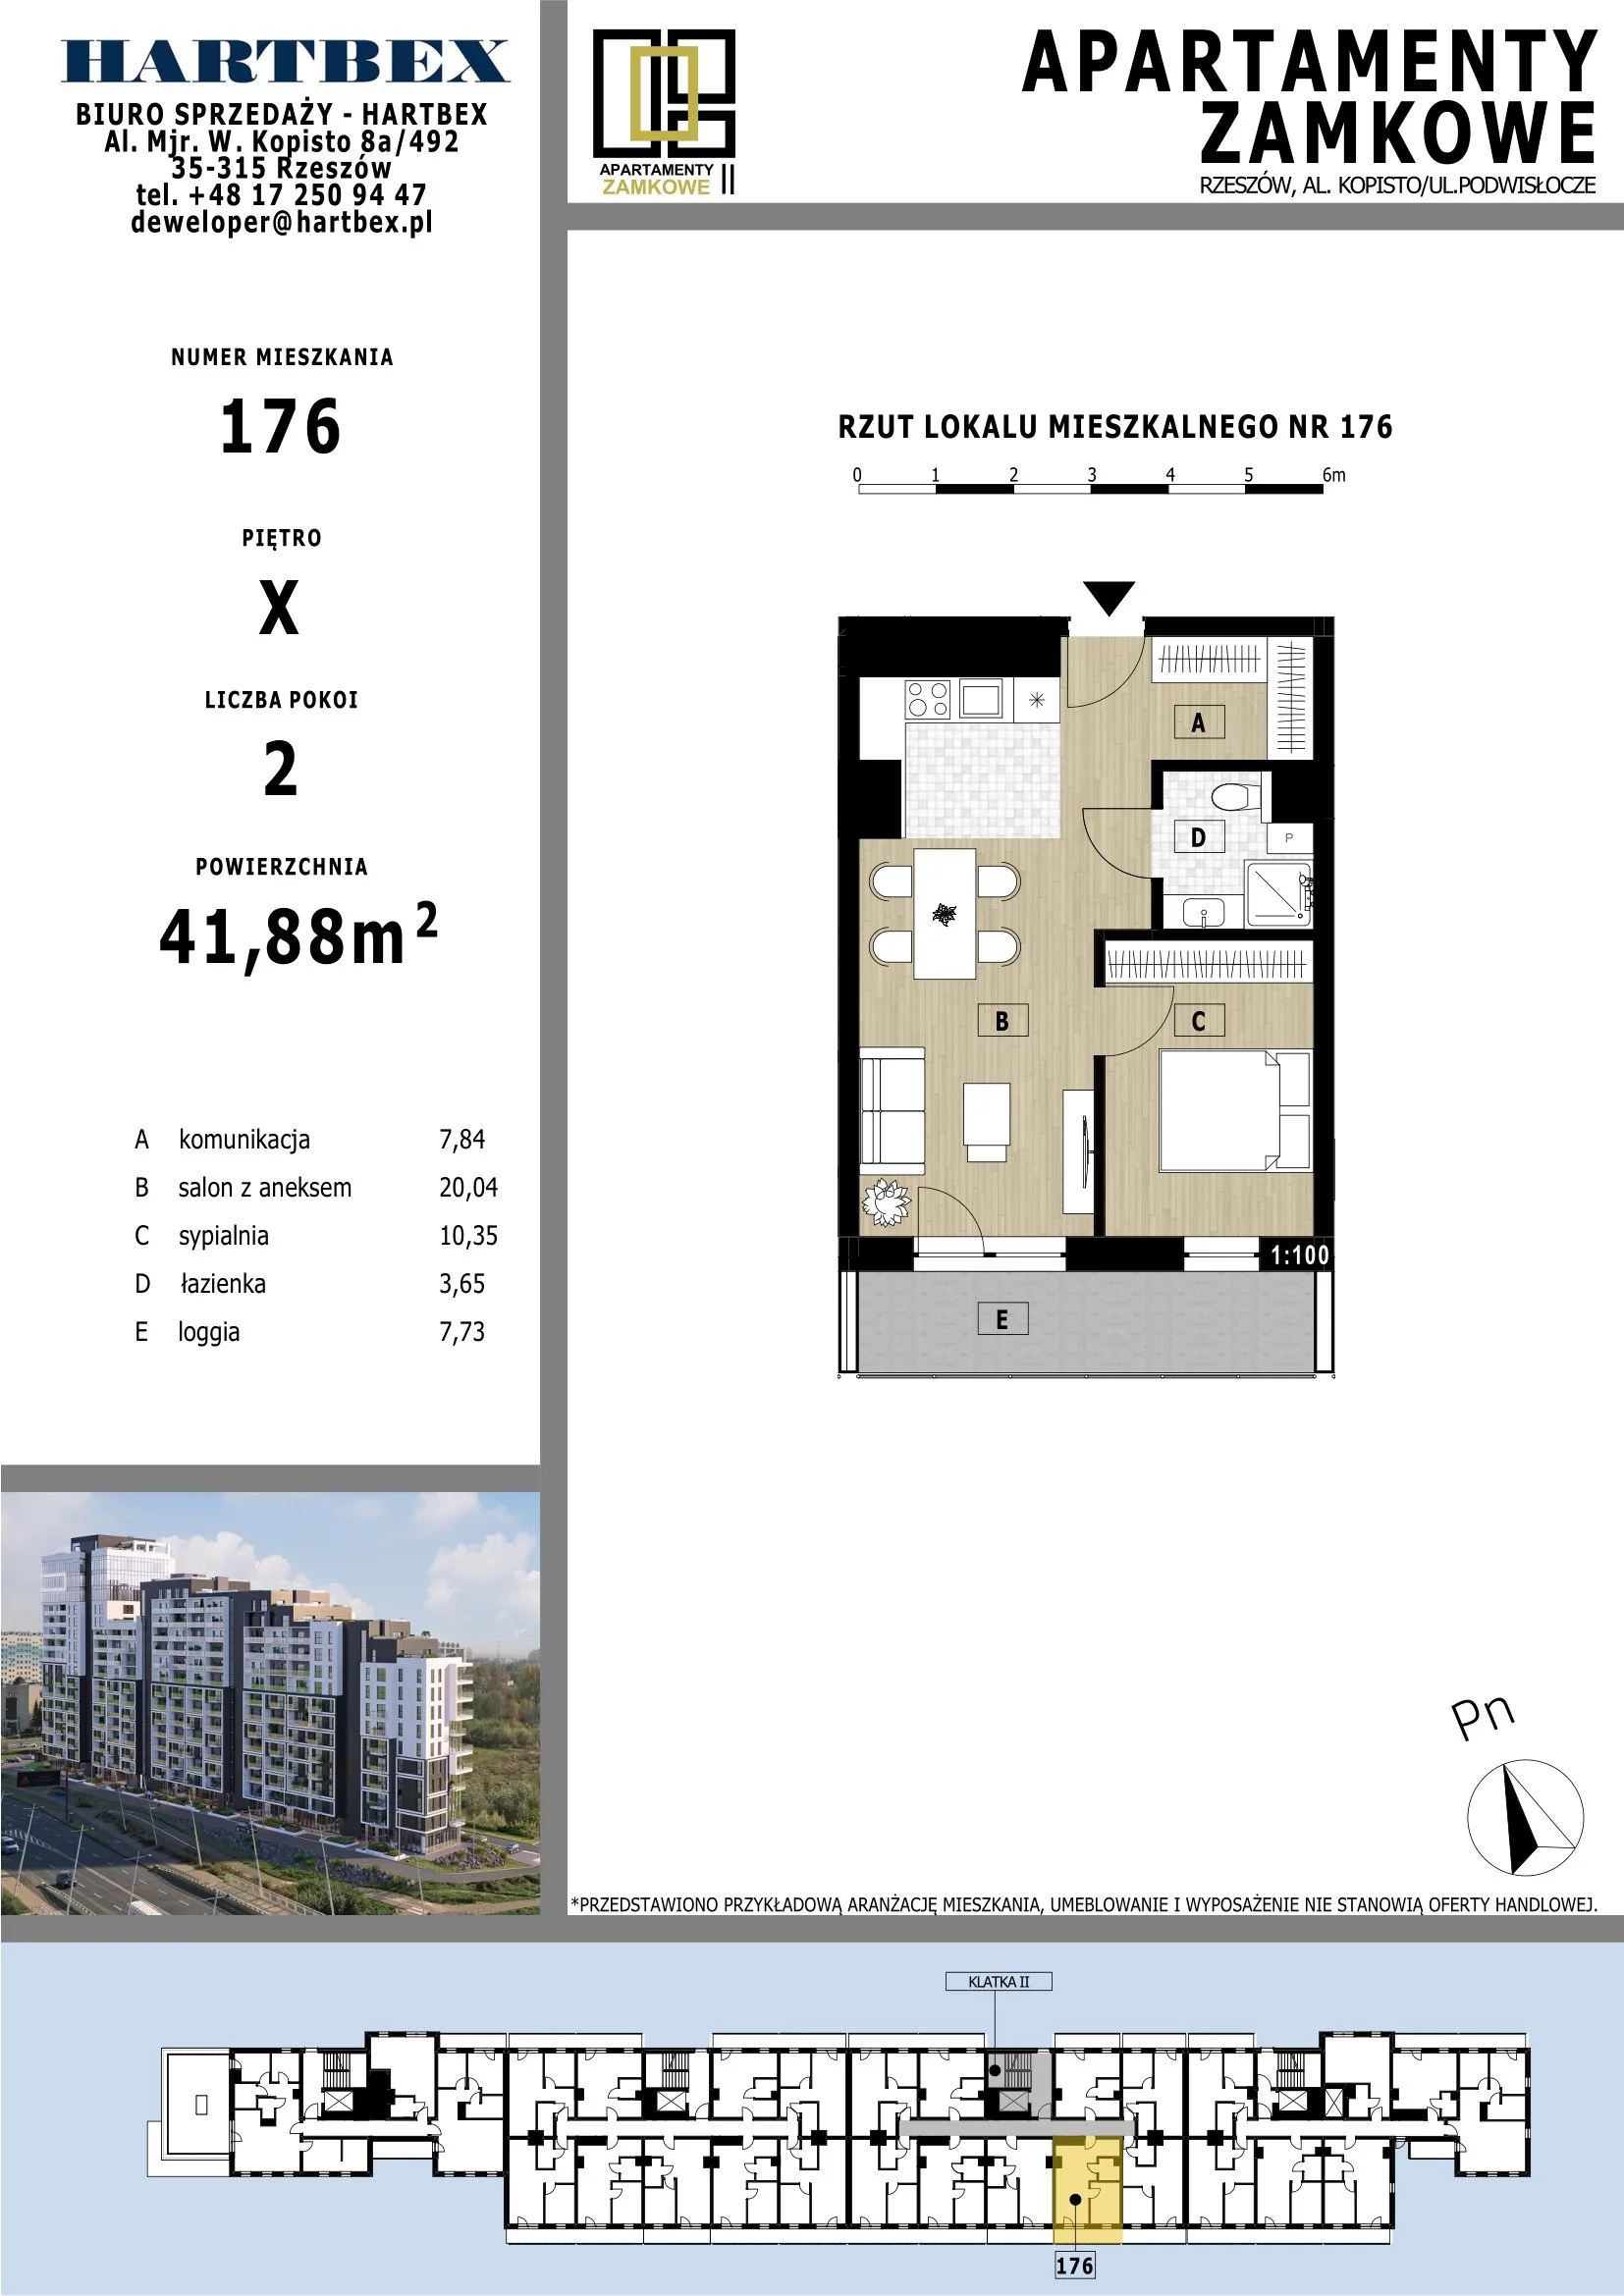 Mieszkanie 41,88 m², piętro 10, oferta nr 176, Apartamenty Zamkowe II, Rzeszów, Nowe Miasto, al. mjr W. Kopisto 11